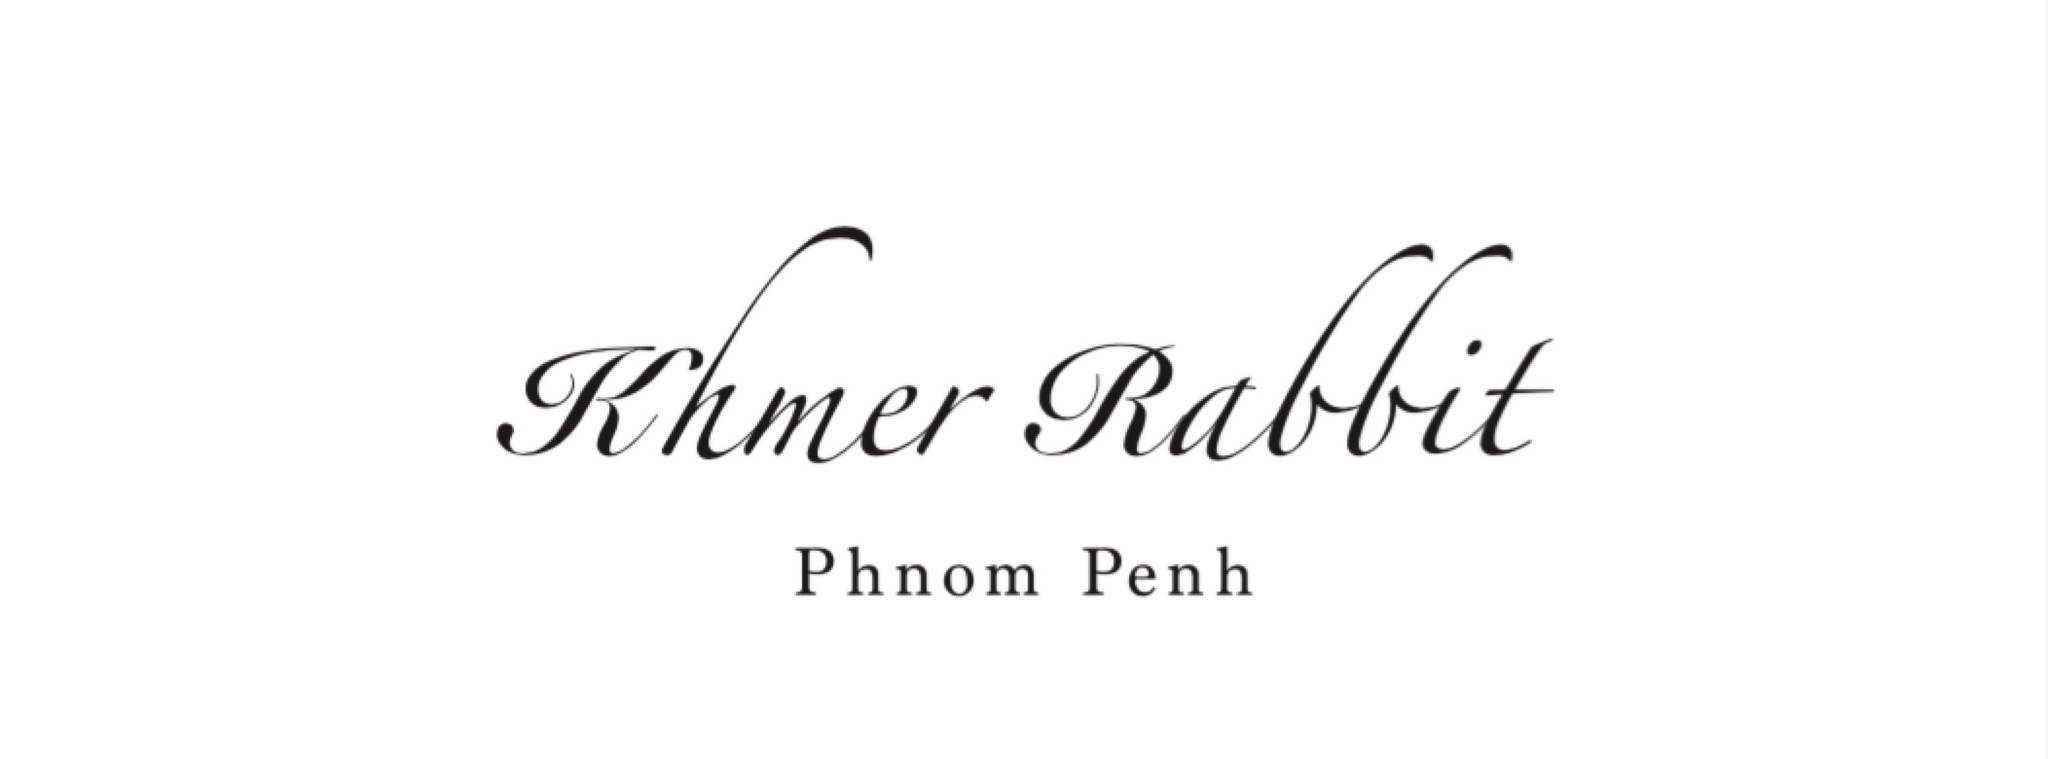 Khmer Rabbit (クメール・ラビット)